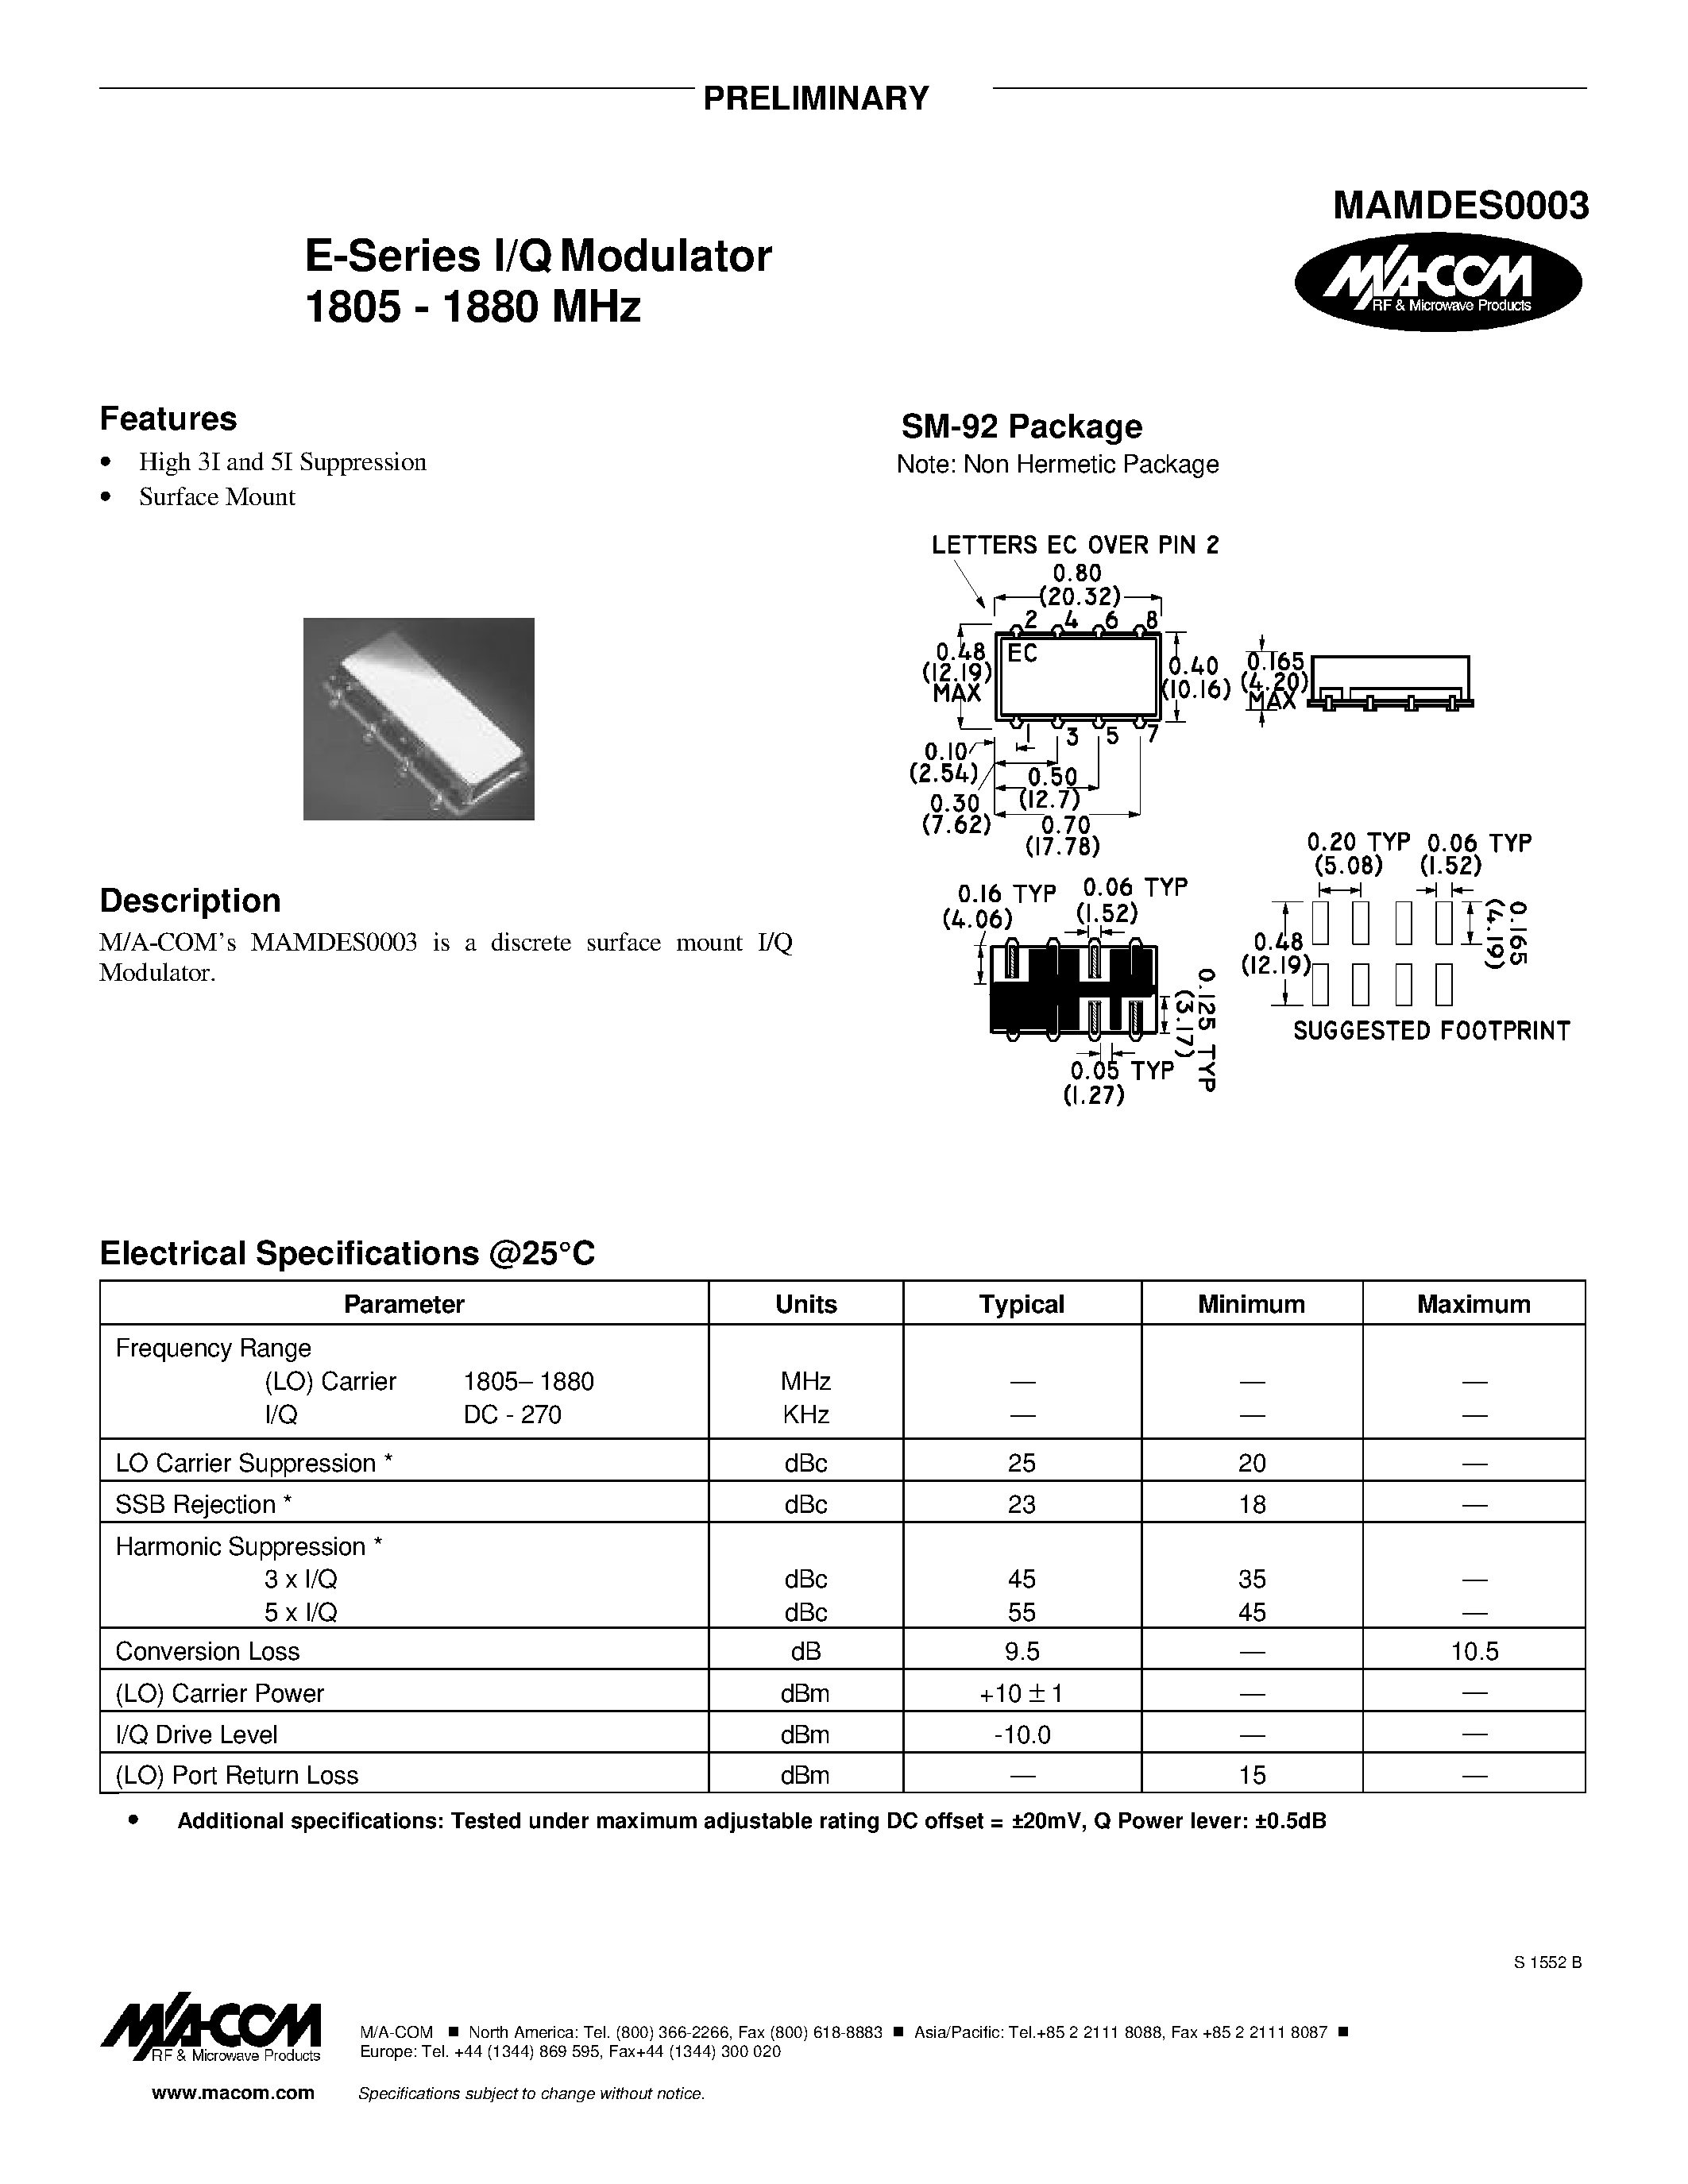 Datasheet MAMDES0003 - E-Series I/Q Modulator 1805 - 1880 MHz page 1